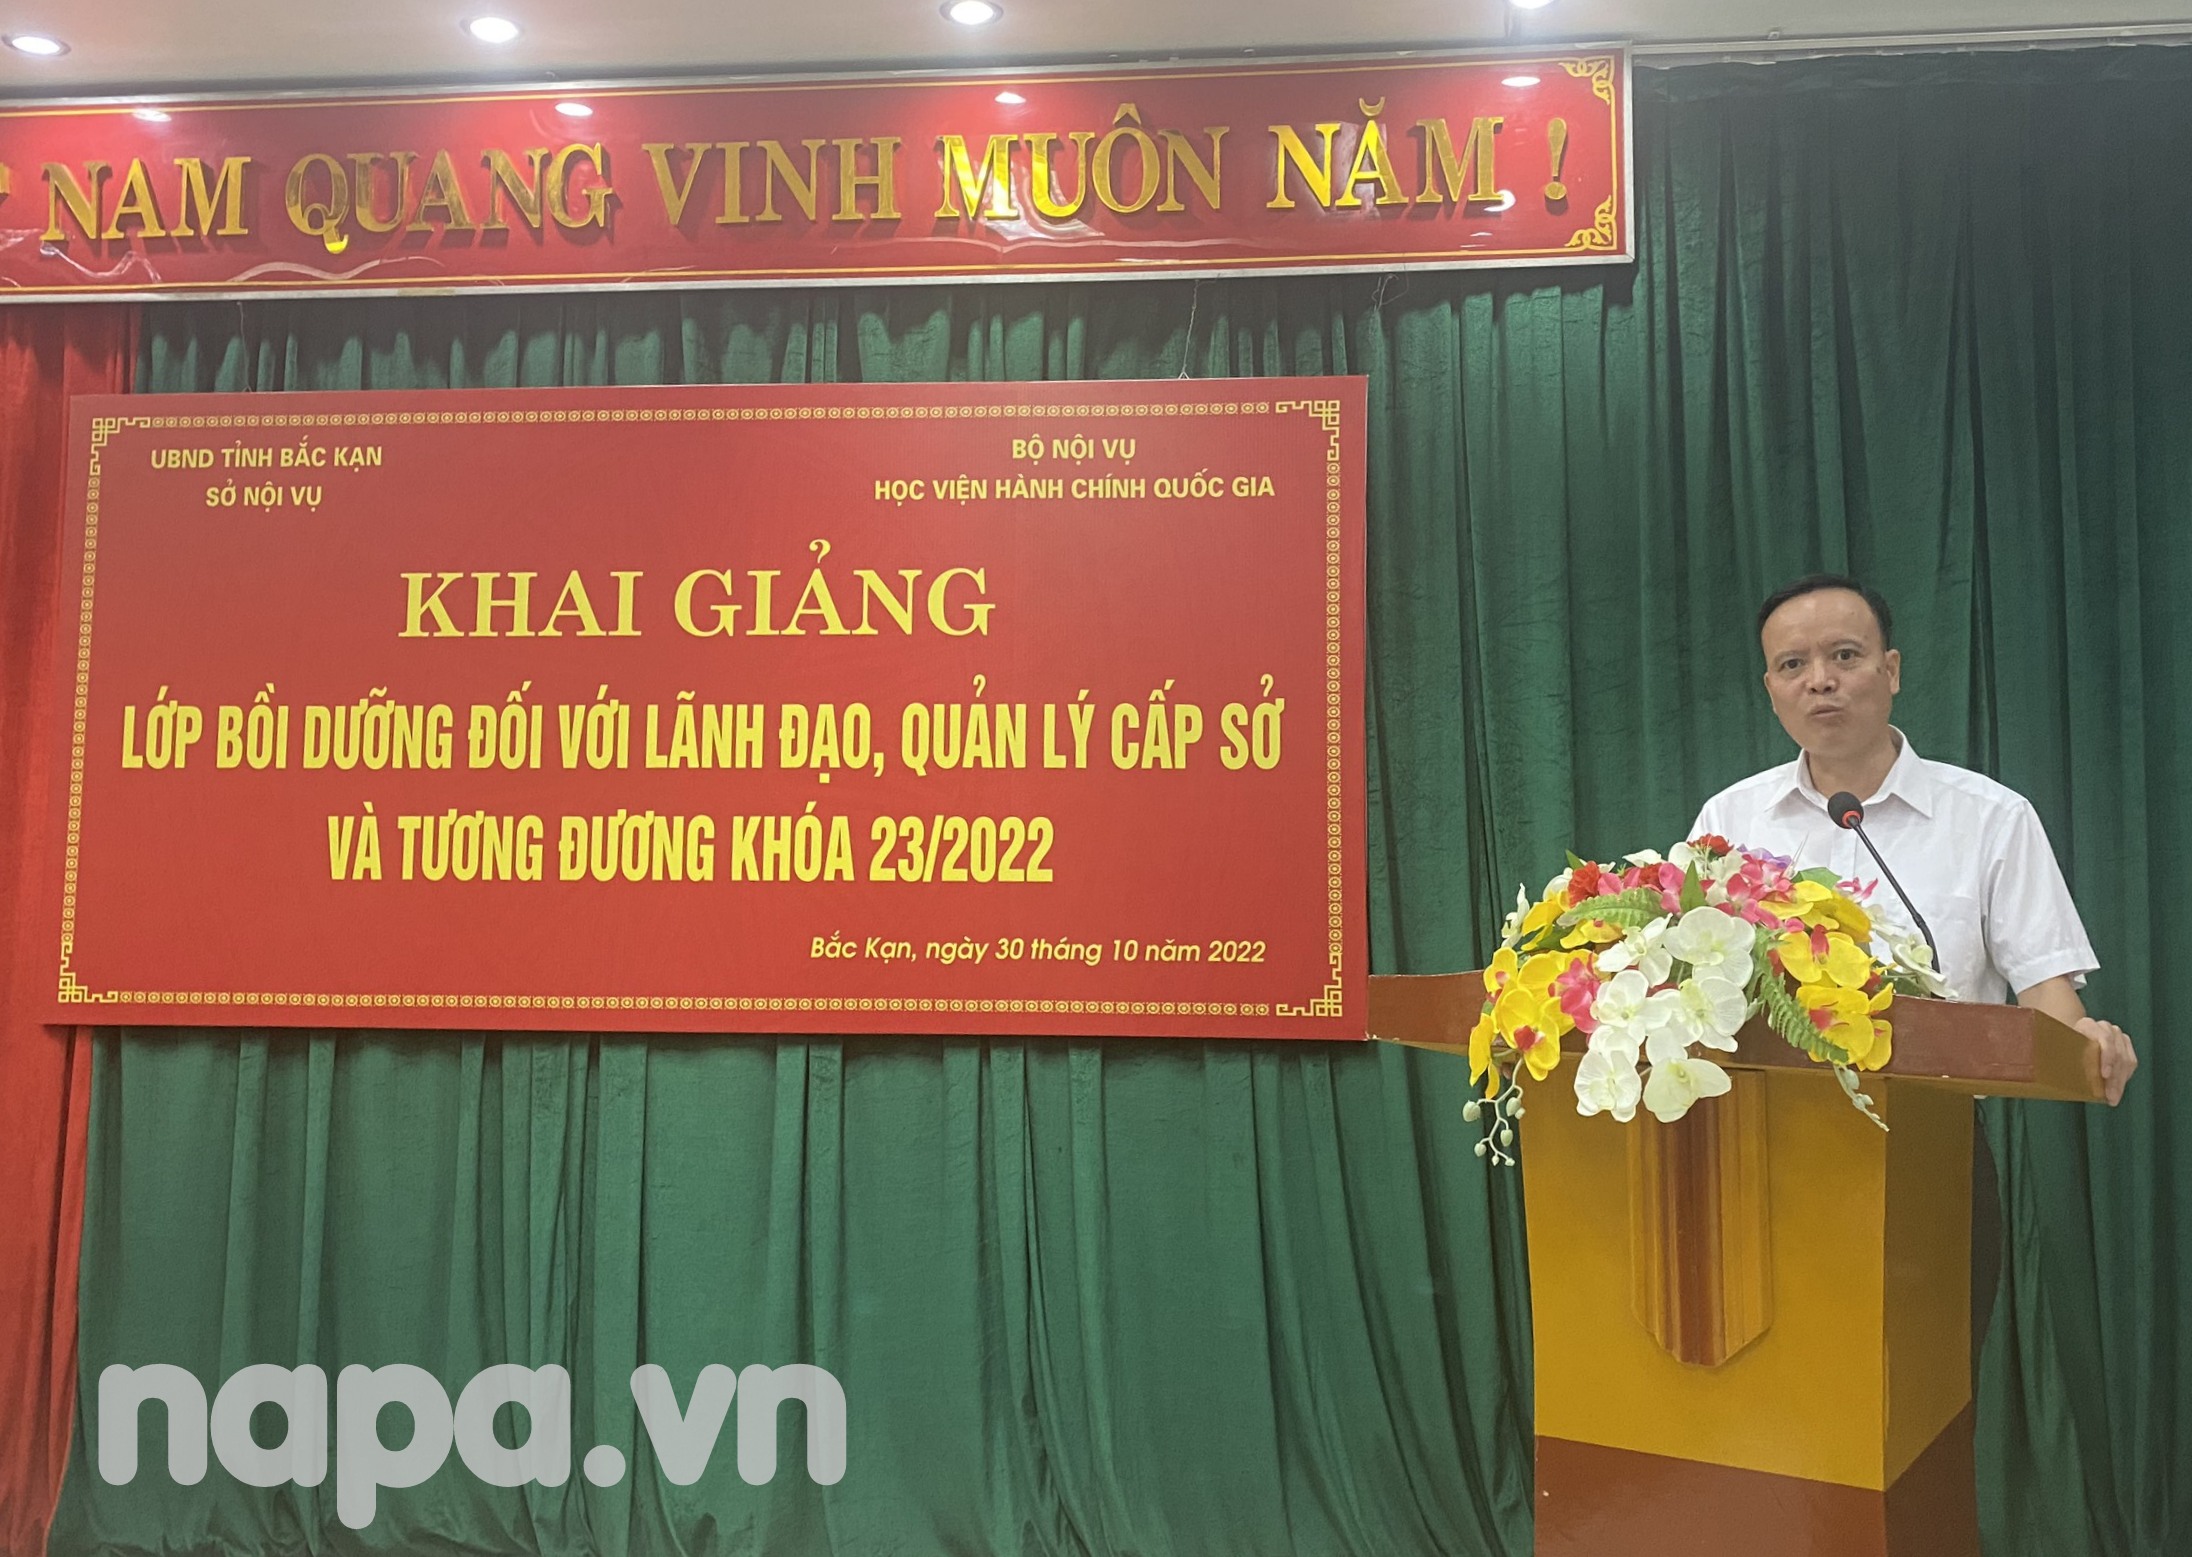 4. Đồng chí Đồng Văn Lưu đại diện học viên phát biểu